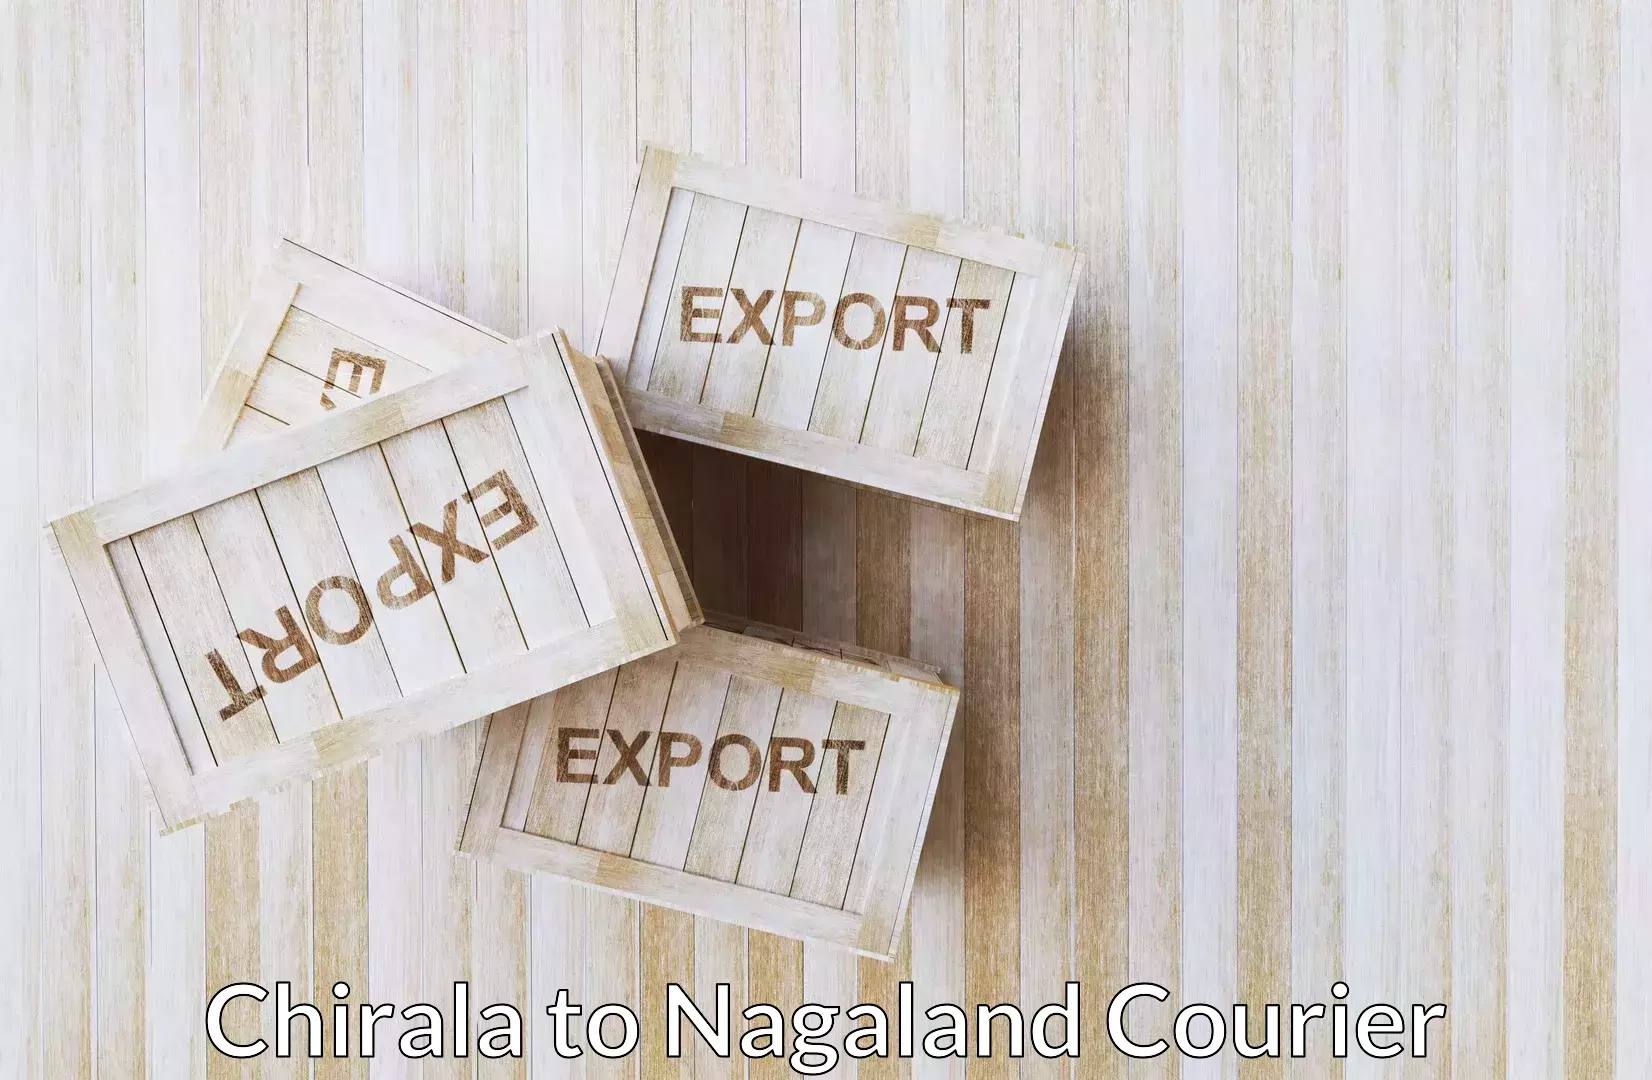 Professional moving company Chirala to Nagaland